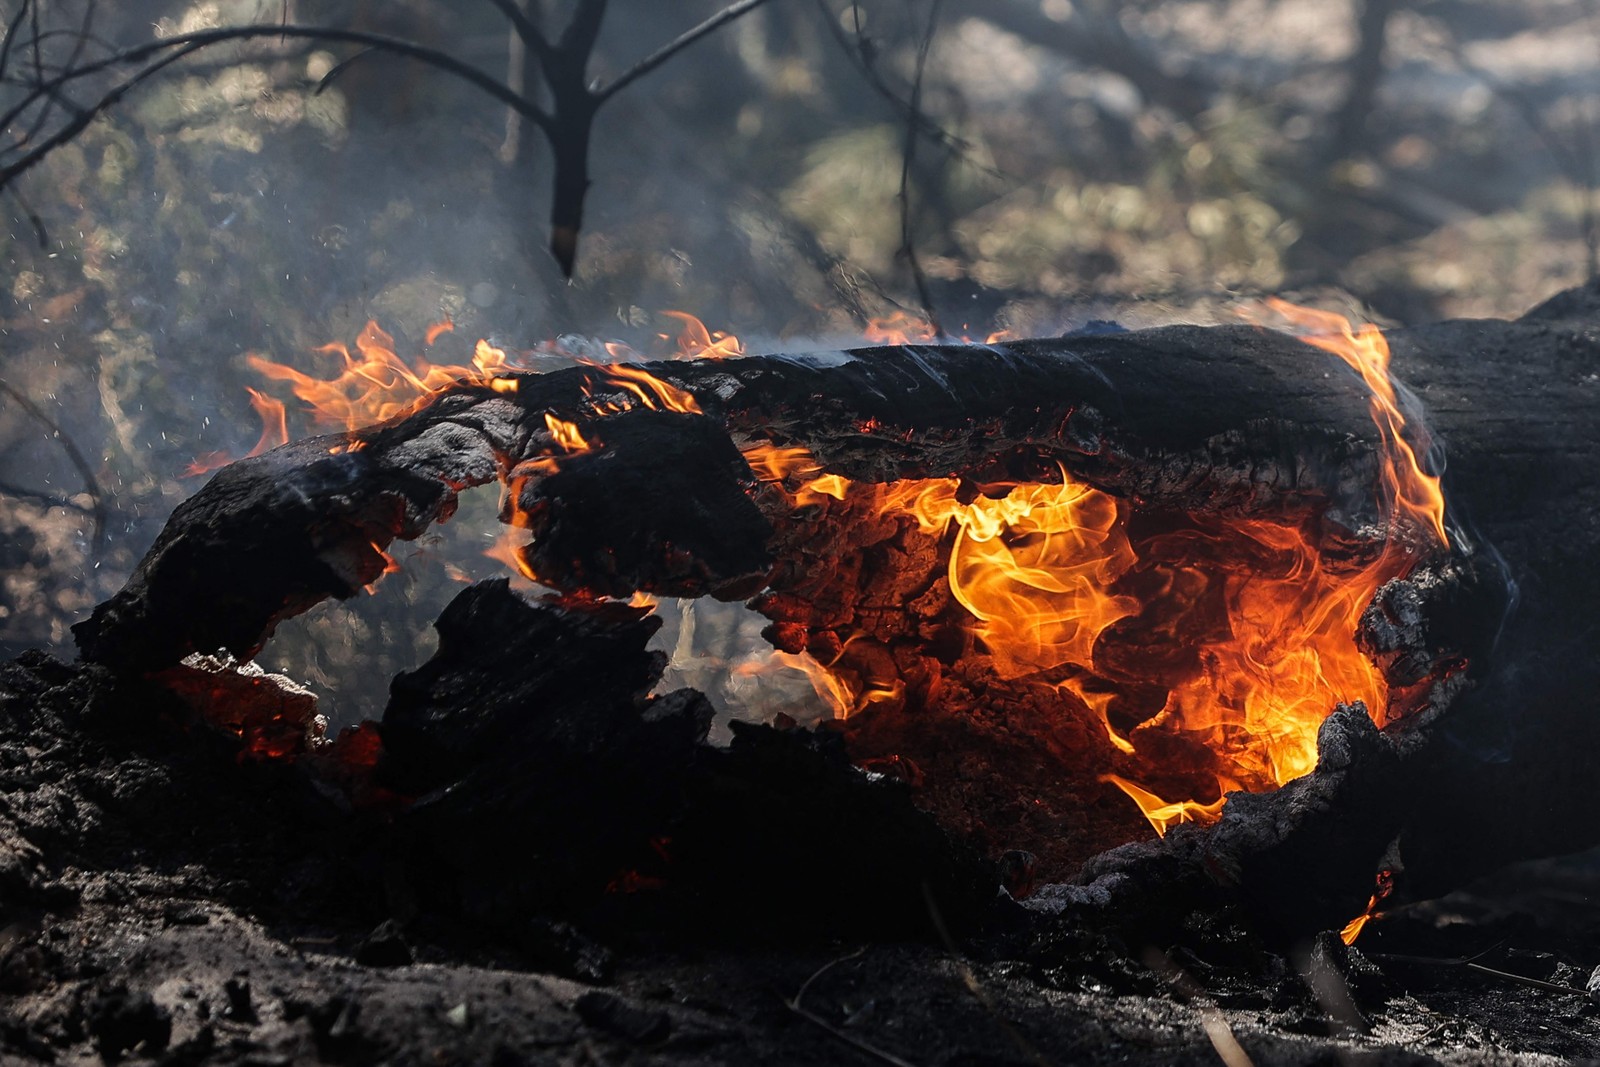 Tronco arde em chamas  no fundo da Duna du Pyla, perto de La Teste-de-Buch, sudoeste da França  — Foto: THIBAUD MORITZ / AFP